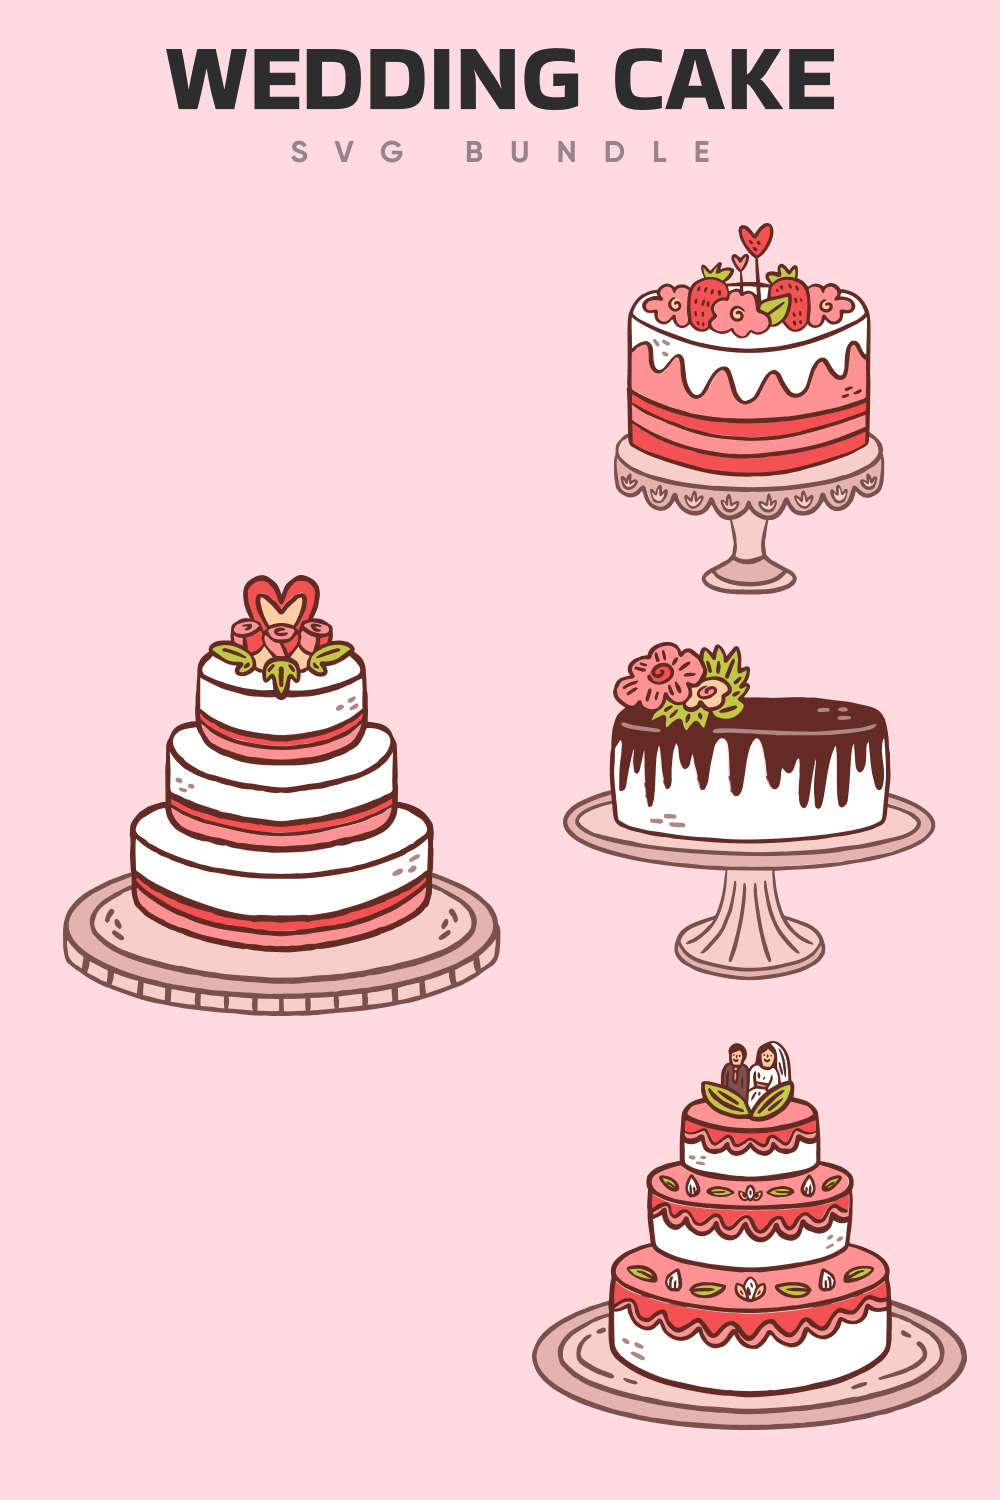 Four types of amazing wedding cakes.